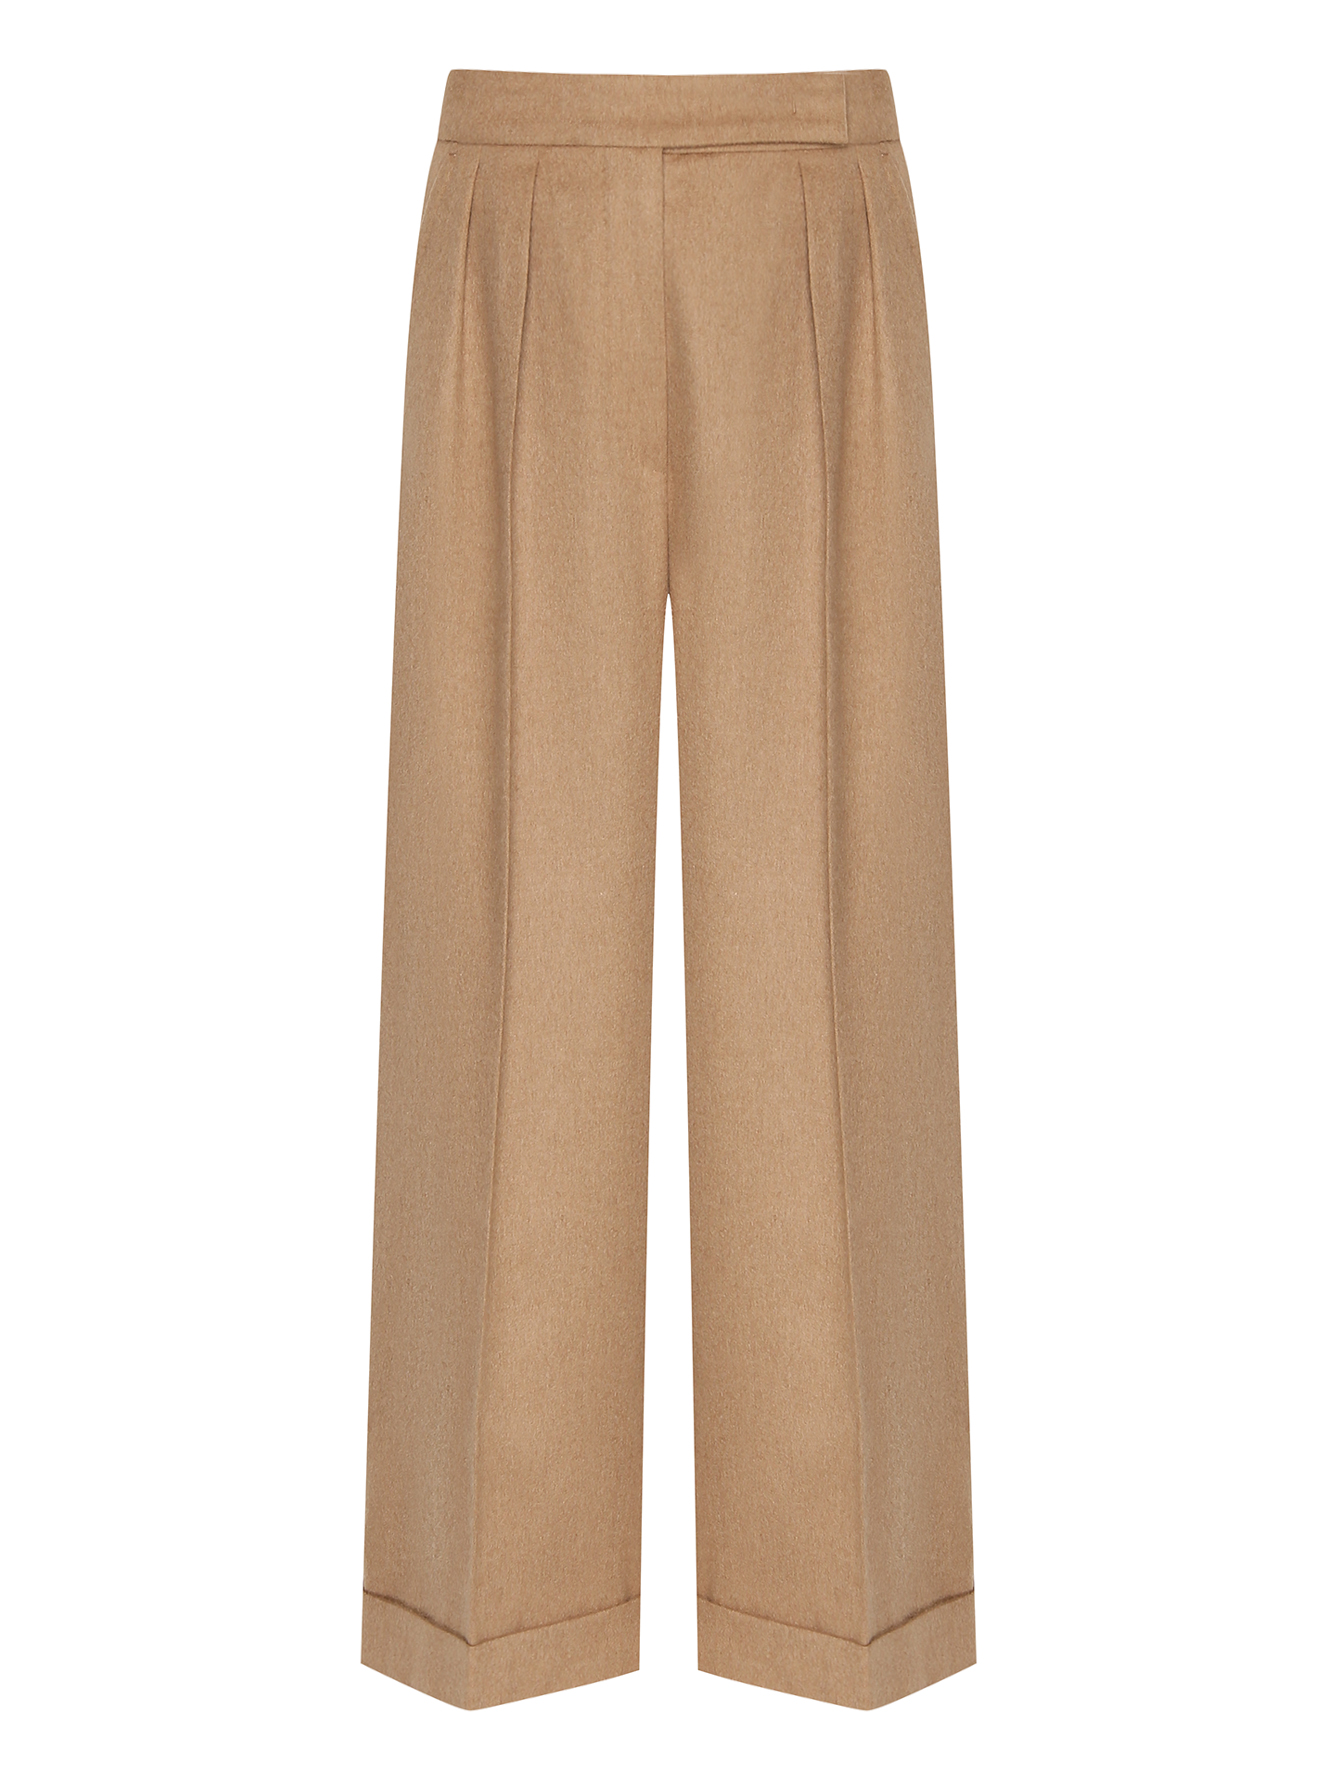 Укороченные брюки из верблюжьей шерсти Max Mara бежевые (594010) купить поцене 69 250 руб. в интернет-магазине ГУМ